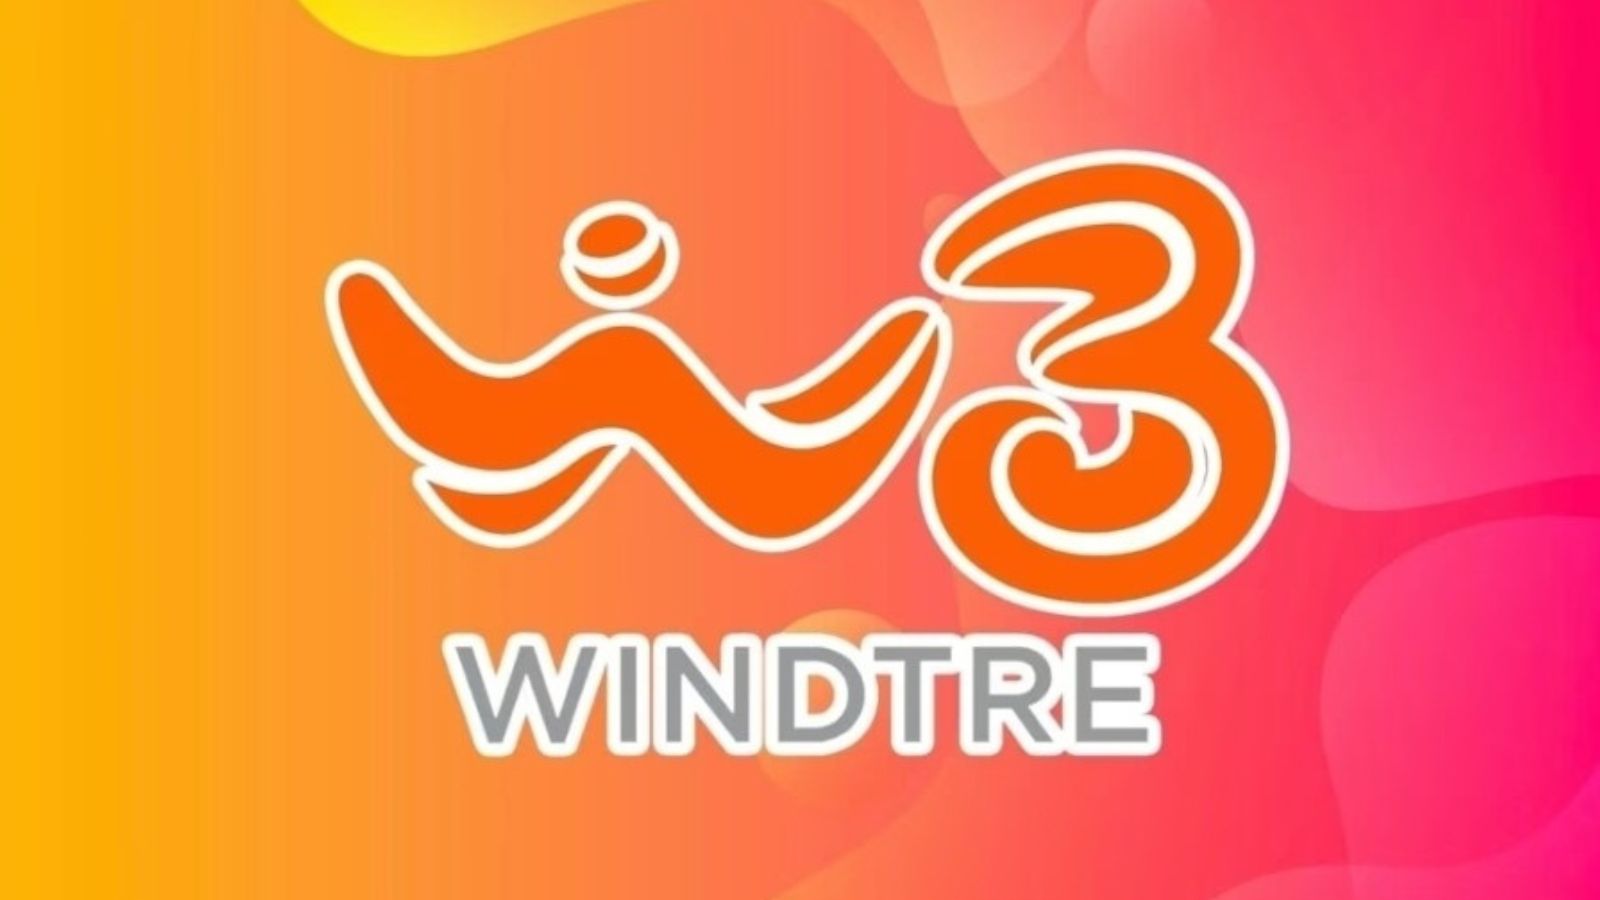 WindTre offerta clienti rete fissa 